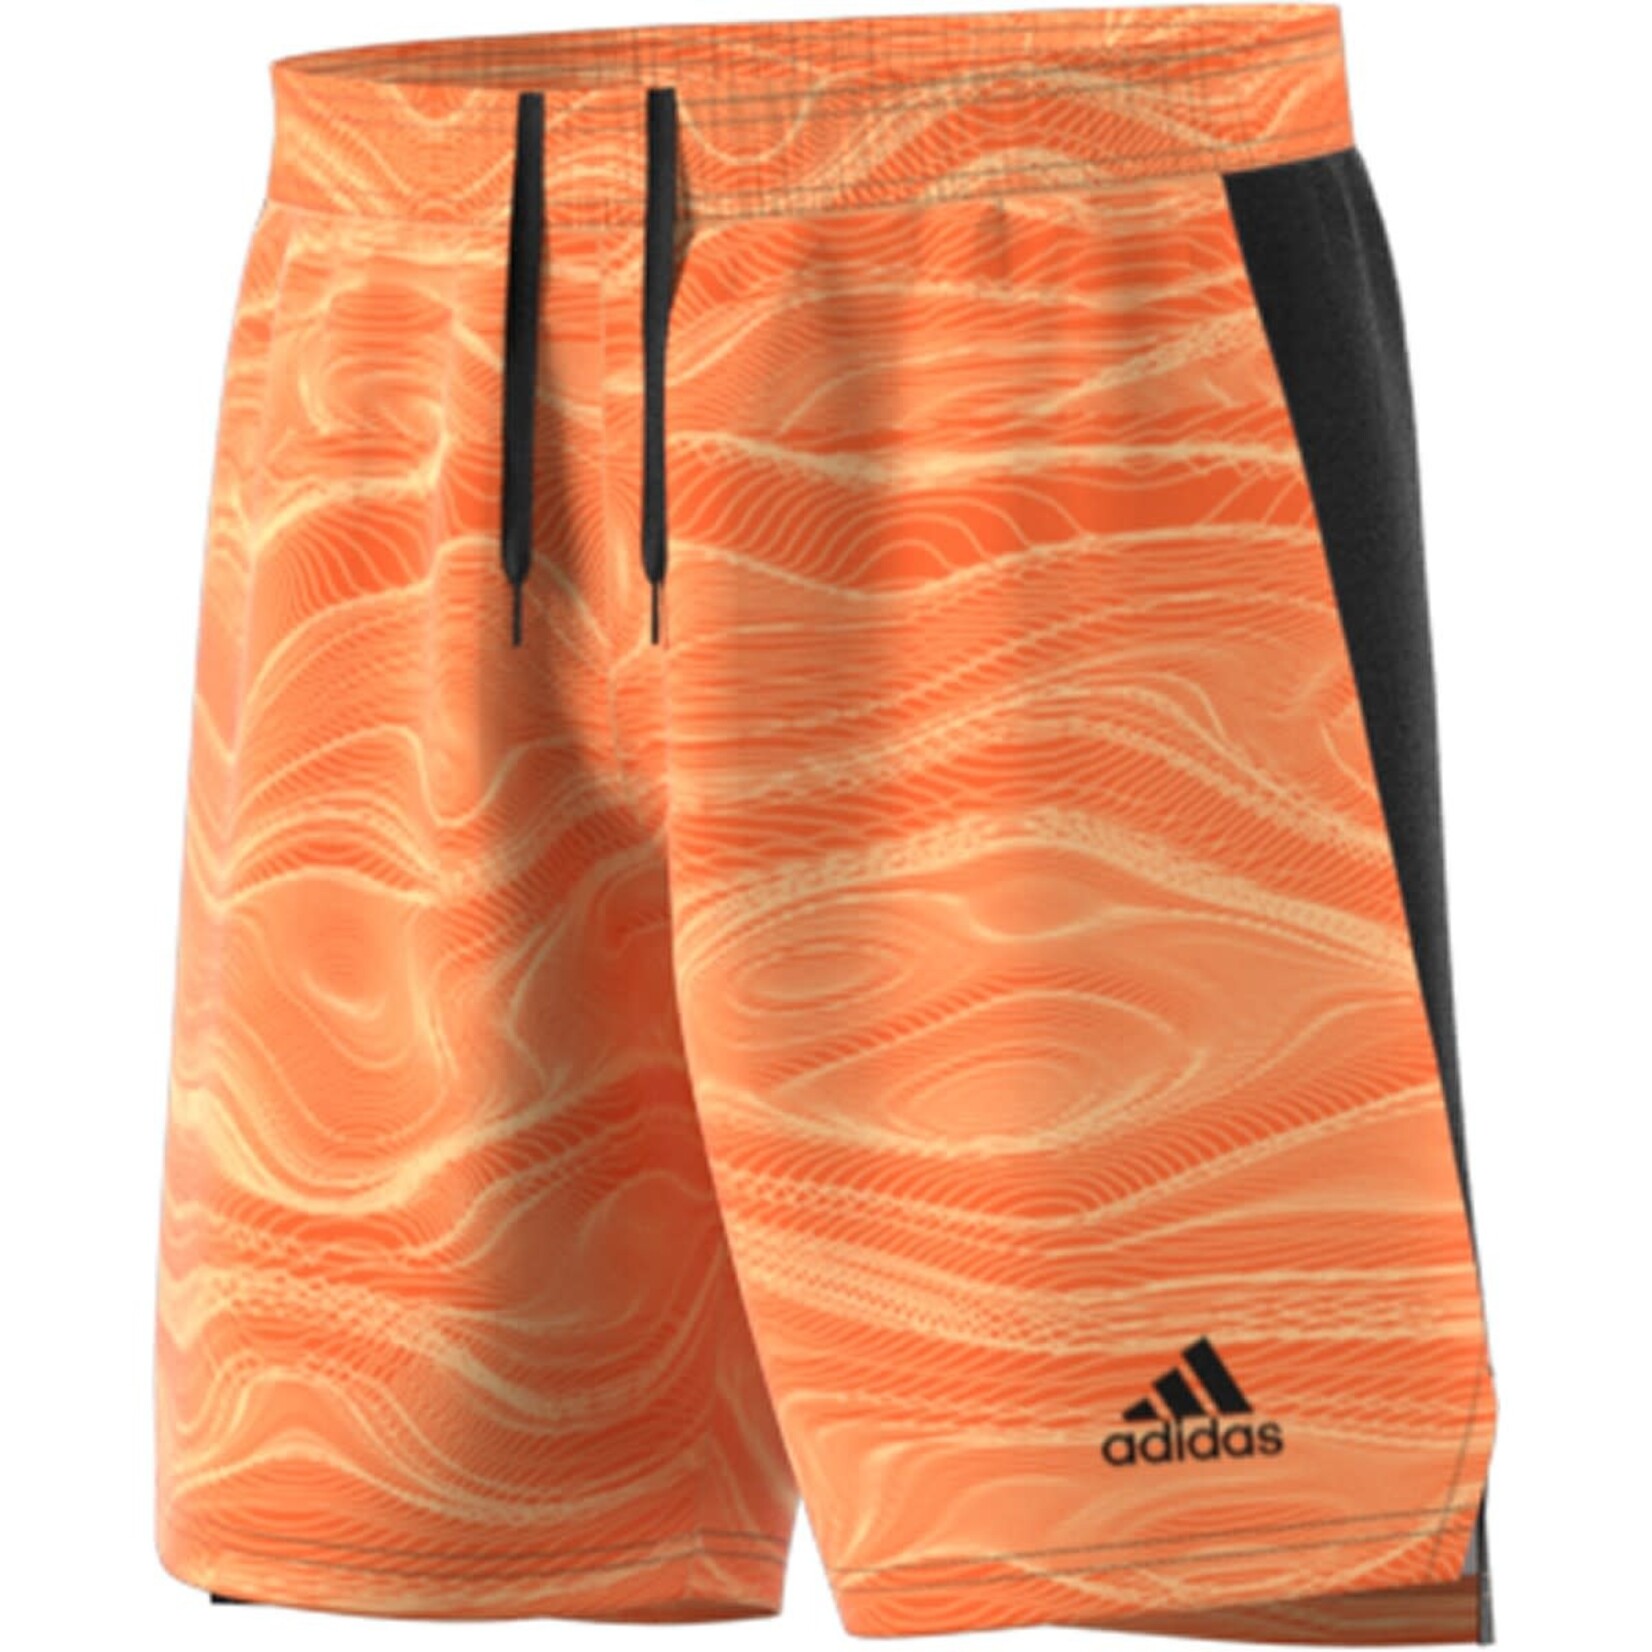 ADIDAS Condivo 21 Goalie Short (Orange)